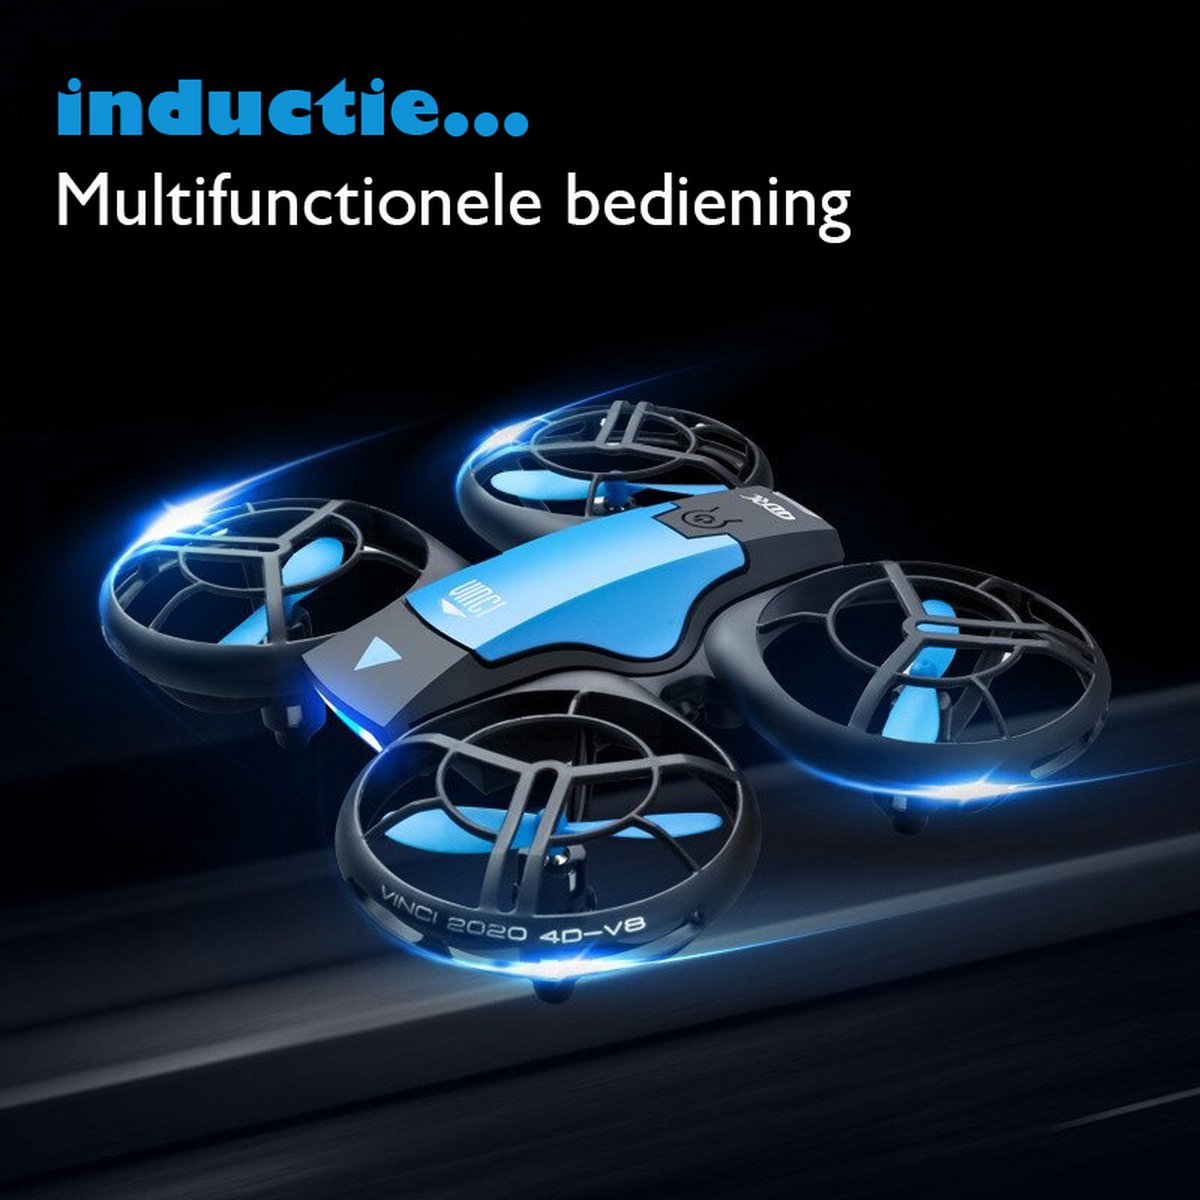 Mini Drone met 4K Camera - WiFi Hoogte Behouden Quadcopter - kinderen/volwassenen - Real-Time transmissie Helicopter - Voor Buiten en Binnen - Geschikt voor Iphone/Android - 3 Batterijen- Blauw